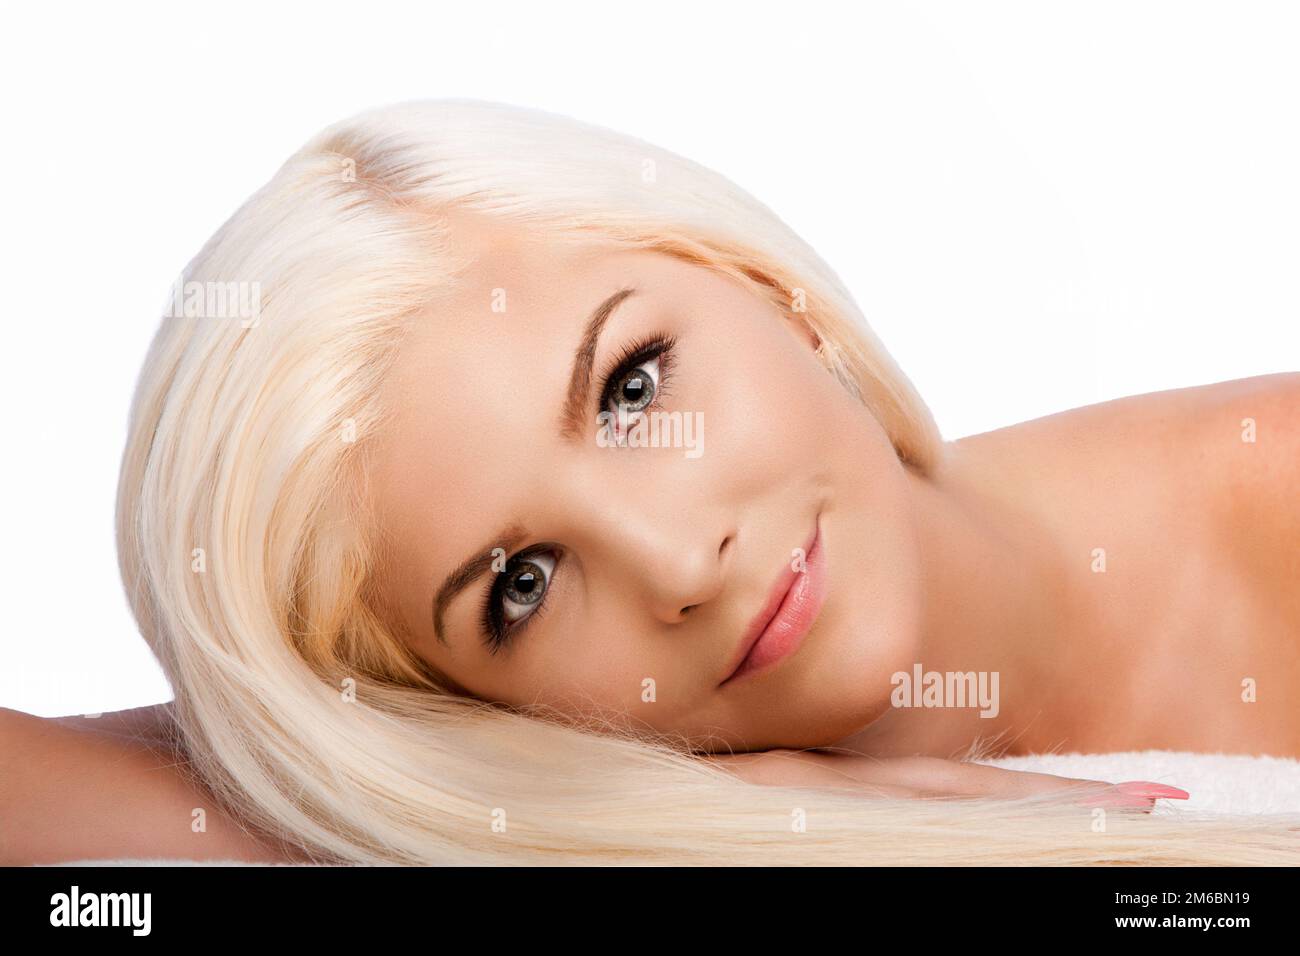 Ästhetische Schönheit Gesichtspflege-Konzept Frauengesicht Stockfoto